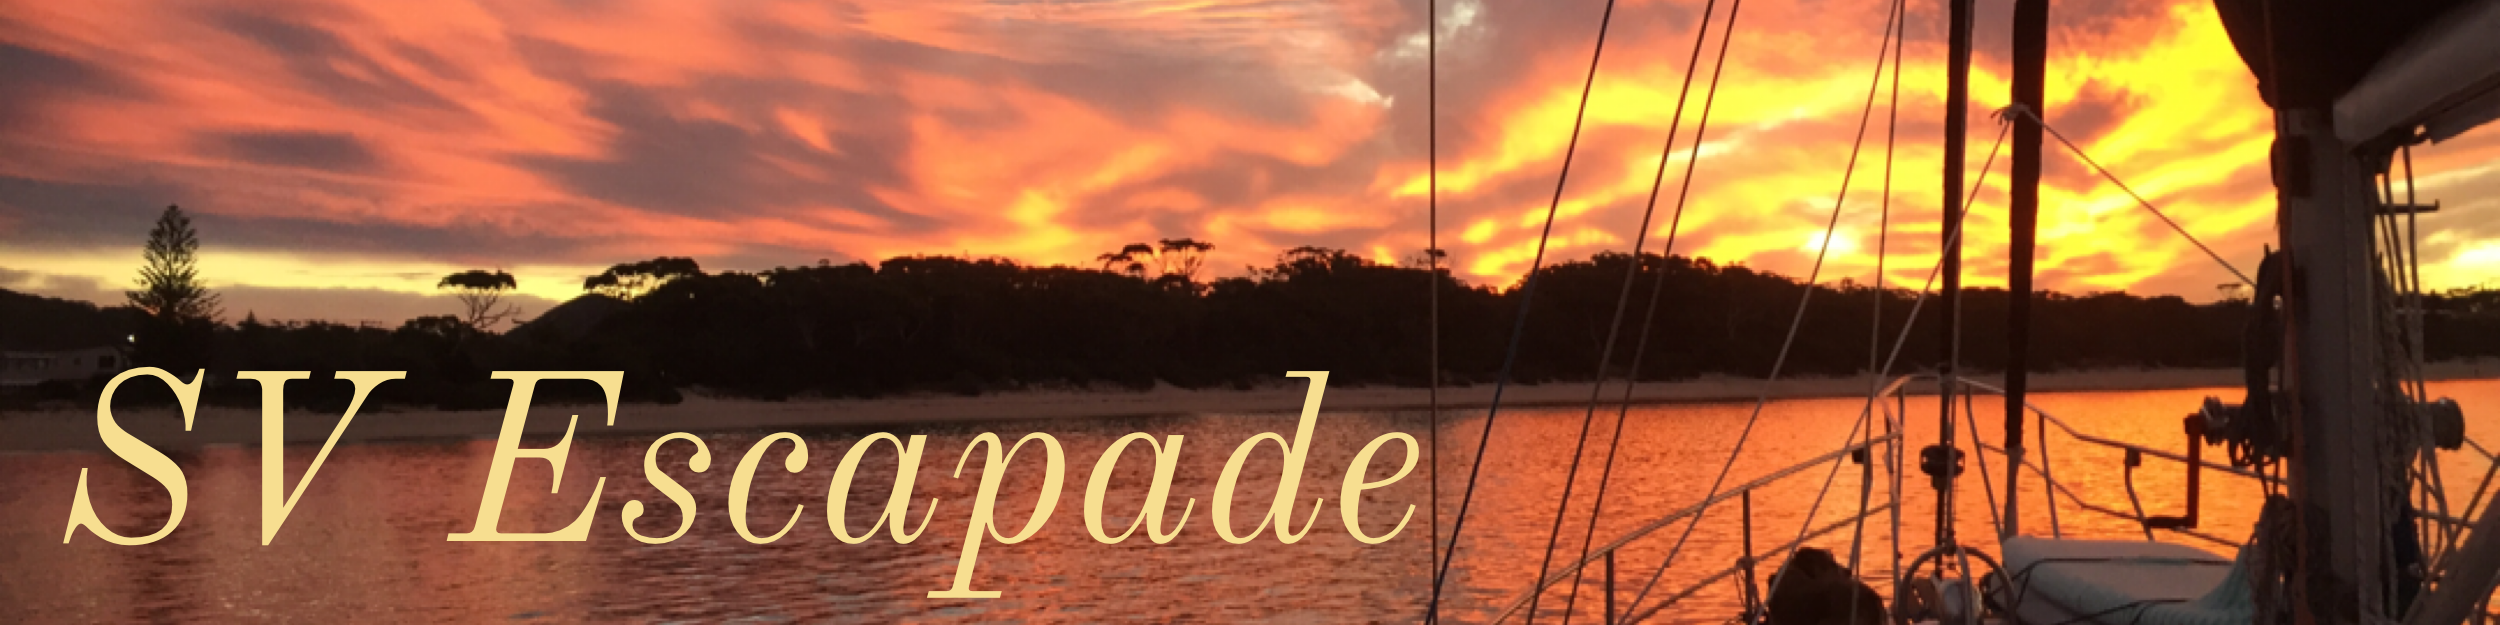 The adventures of sailing vessel Escapade